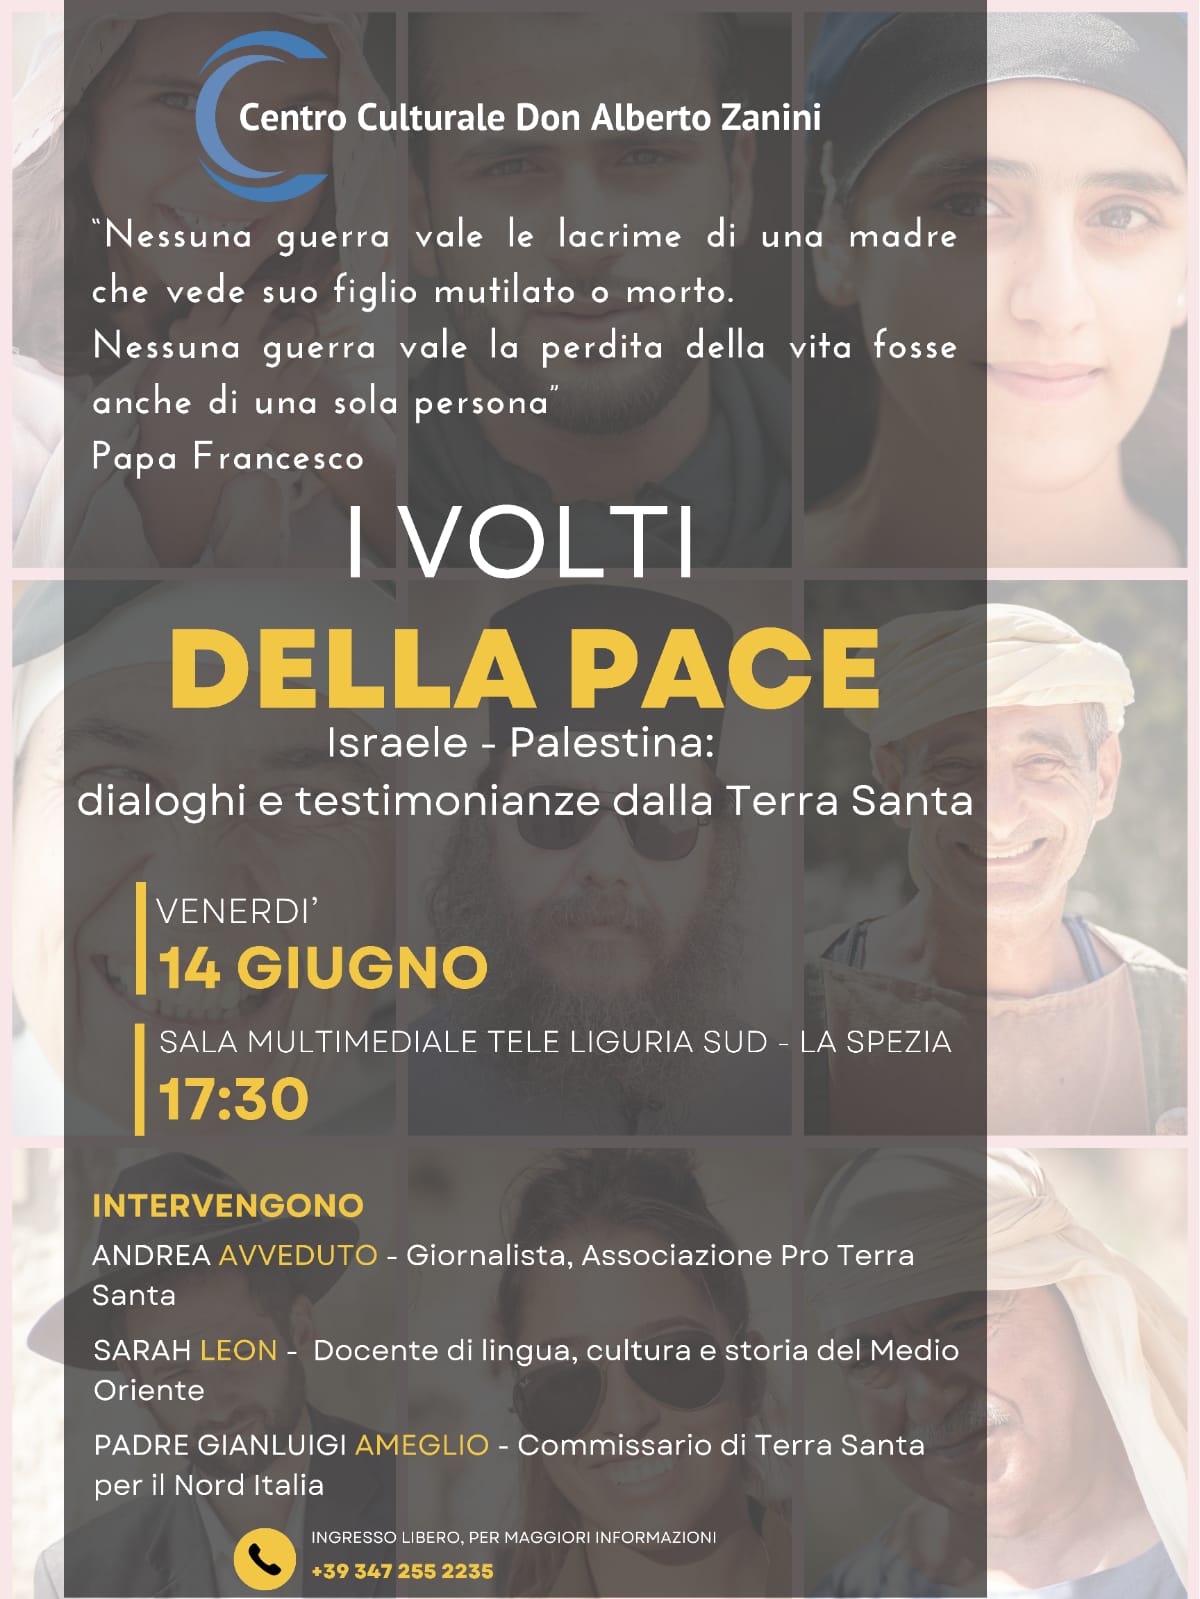 Featured image for “La Spezia: I volti della pace. Dialoghi e testimonianze dalla Terra Santa”